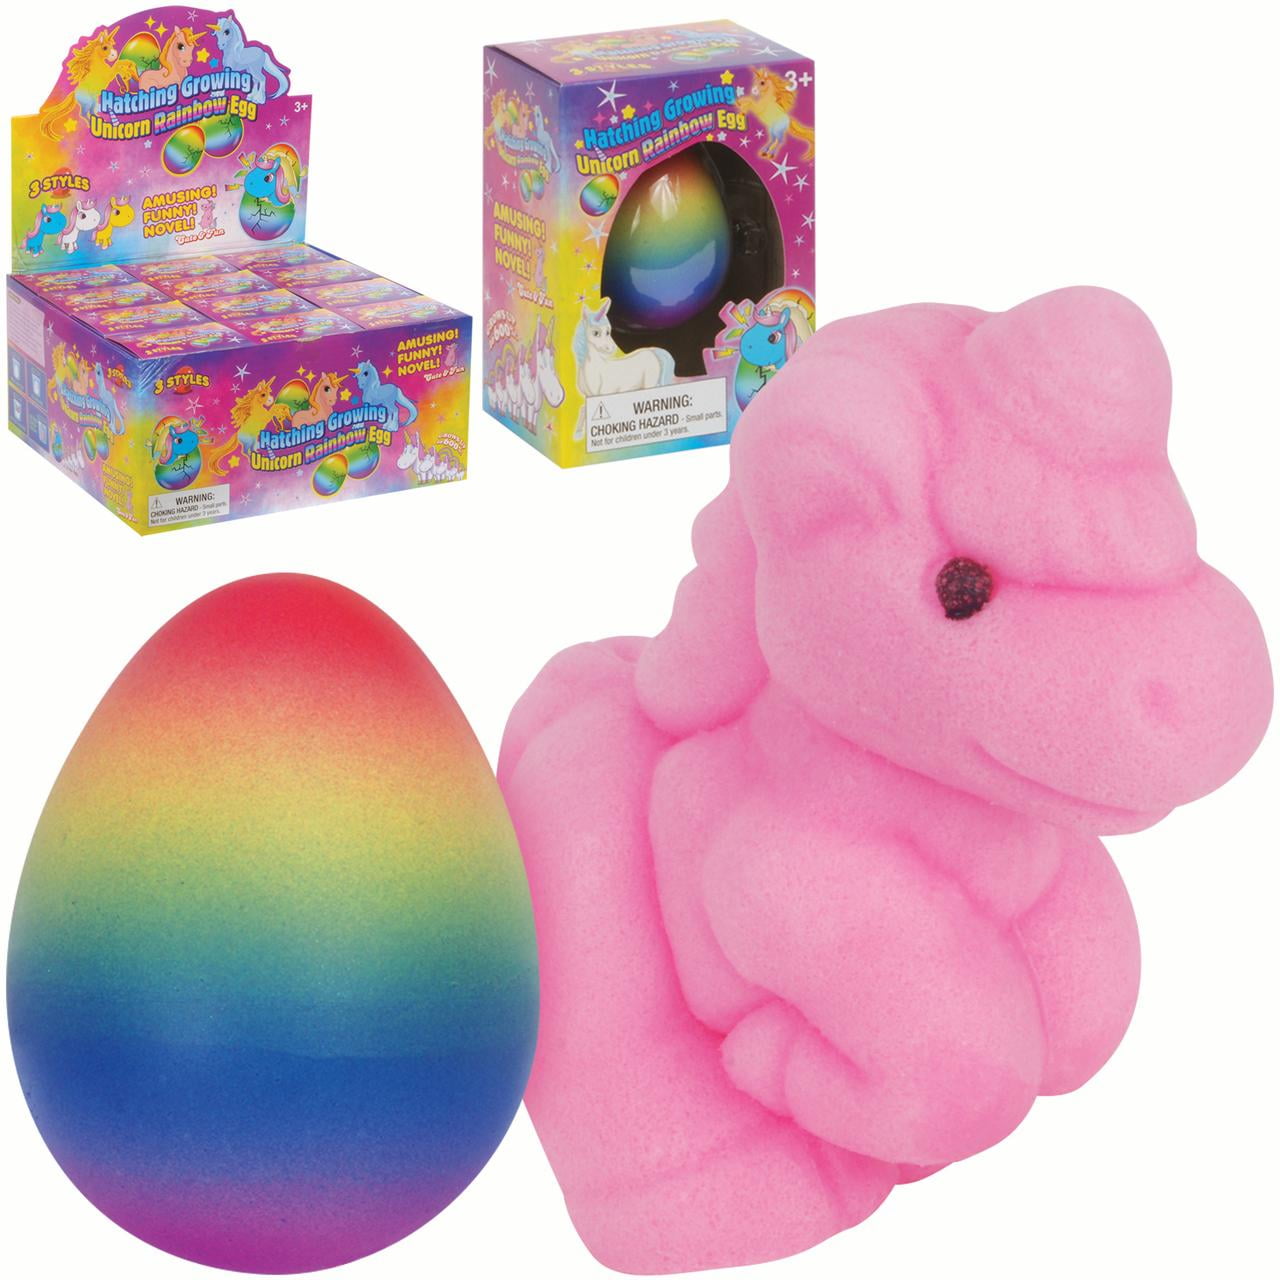 New jumbo Hatching & Growing Unicorn Egg Toy Gift for Children 